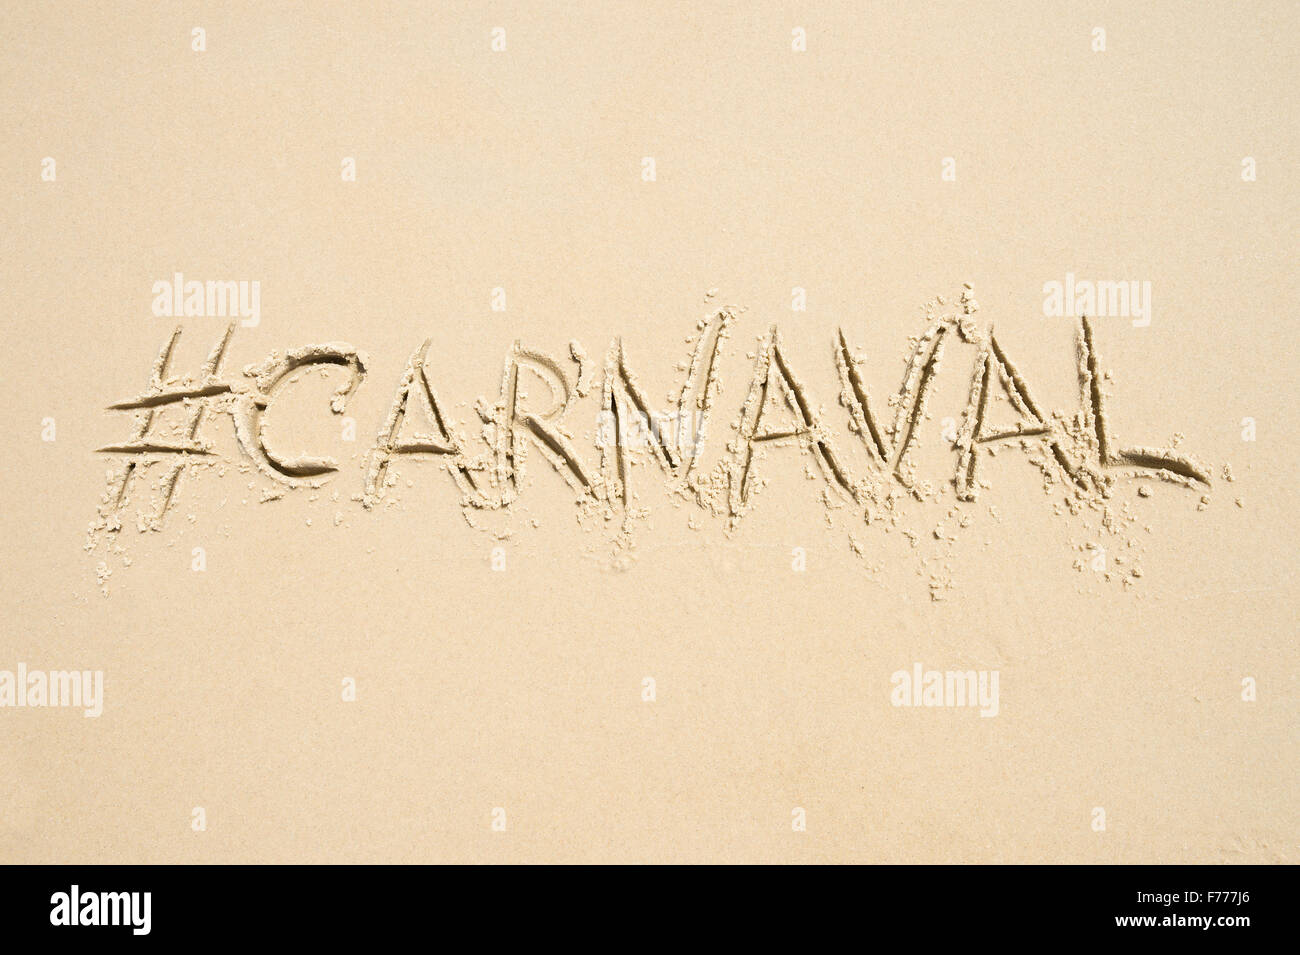 Hashtag-social Media-Nachricht für Karneval (Carnaval in portugiesischer Sprache geschrieben) geschrieben in weichen Sand am Strand von Rio De Janeiro Stockfoto